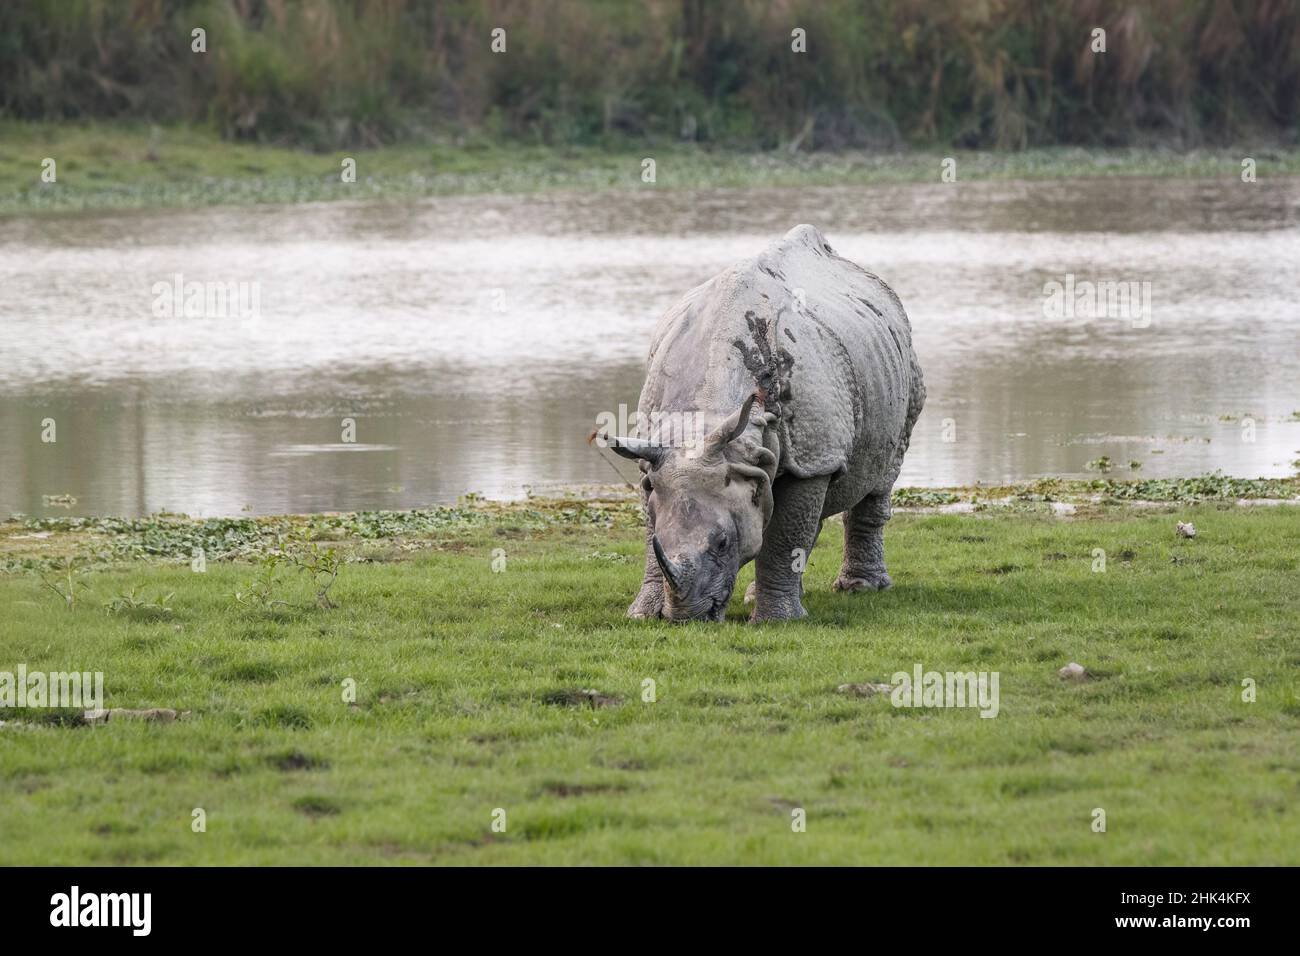 Rhinocéros indien, rhinocéros unicornis, pâturage.Parc national de Kaziranga, Assam, Inde Banque D'Images